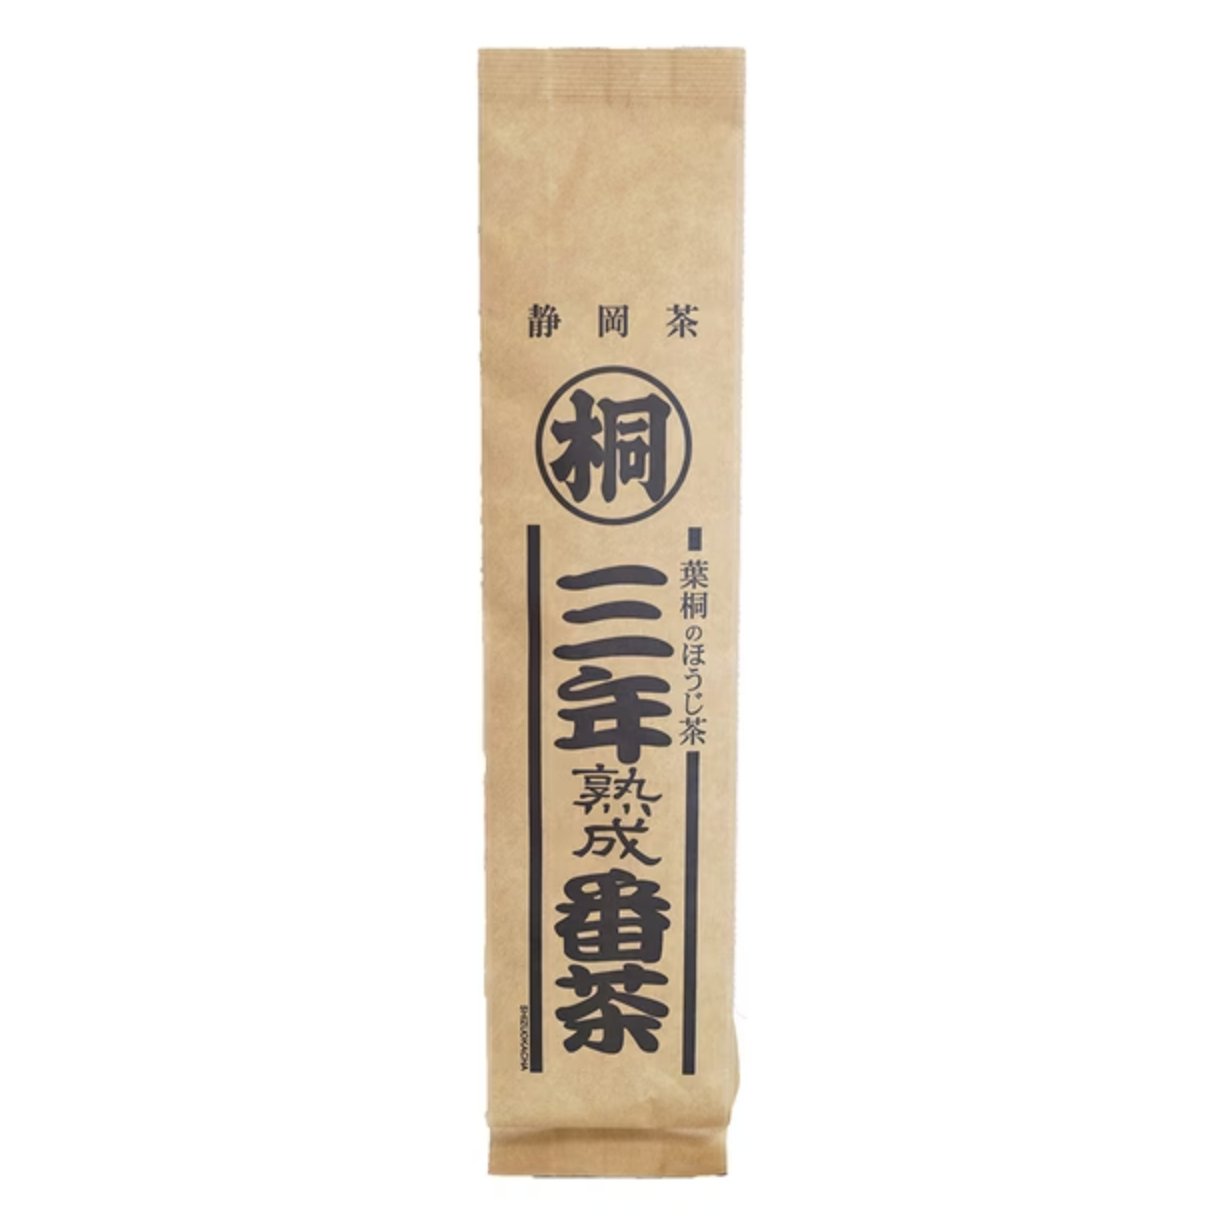 Hagiri three-year aged bancha 120g - NihonMura